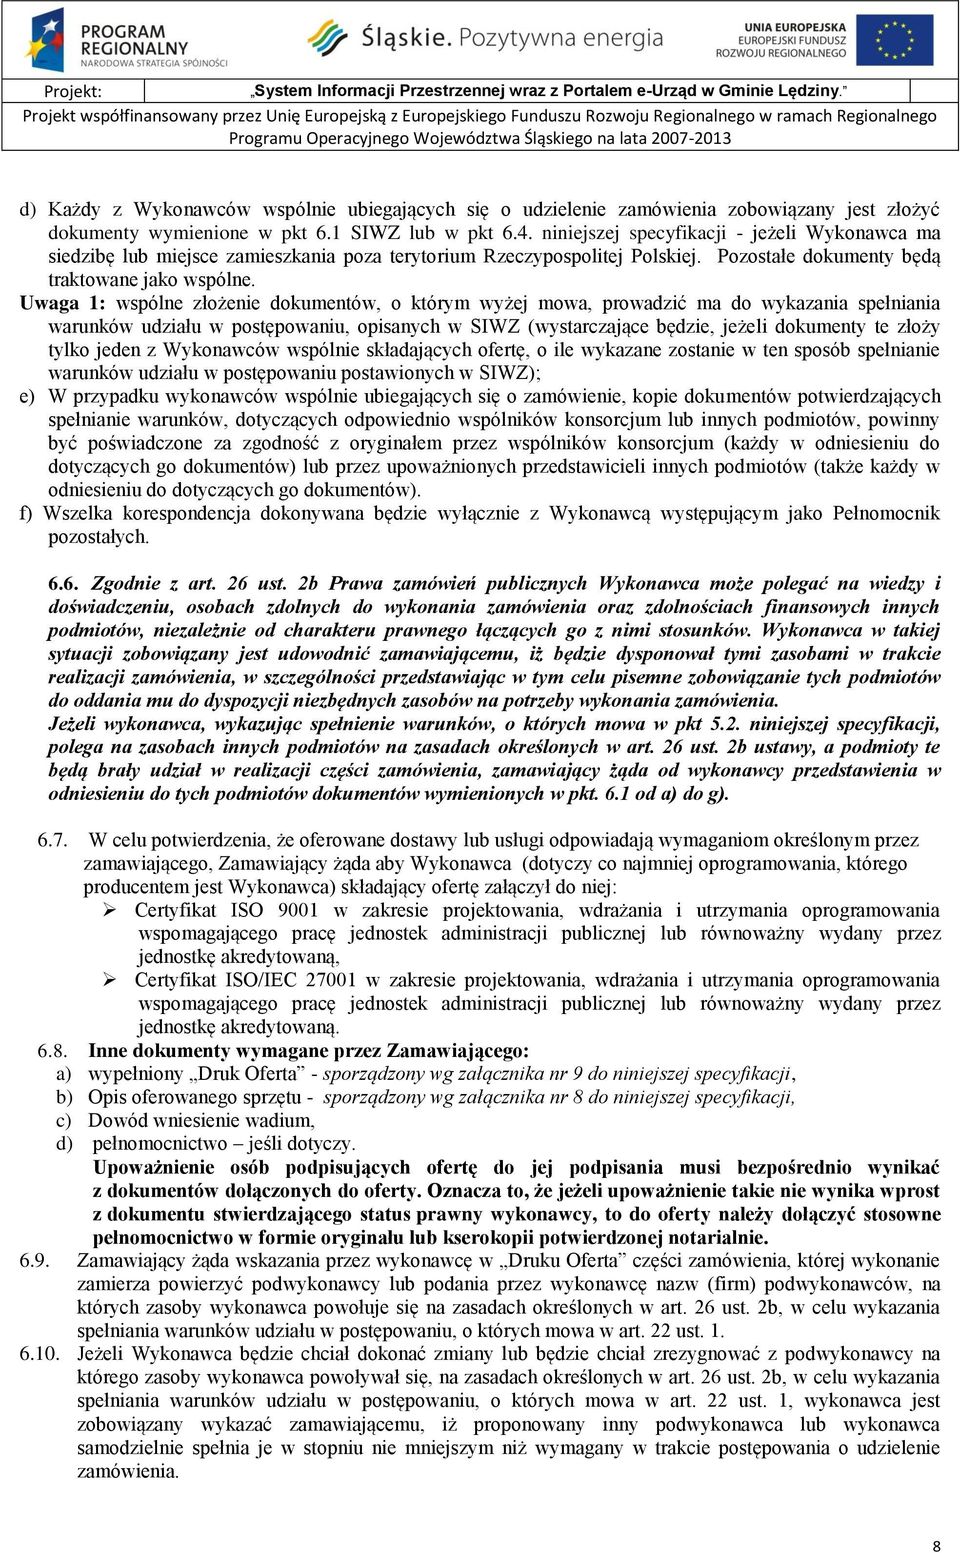 jest złożyć dokumenty wymienione w pkt 6.1 SIWZ lub w pkt 6.4. niniejszej specyfikacji - jeżeli Wykonawca ma siedzibę lub miejsce zamieszkania poza terytorium Rzeczypospolitej Polskiej.